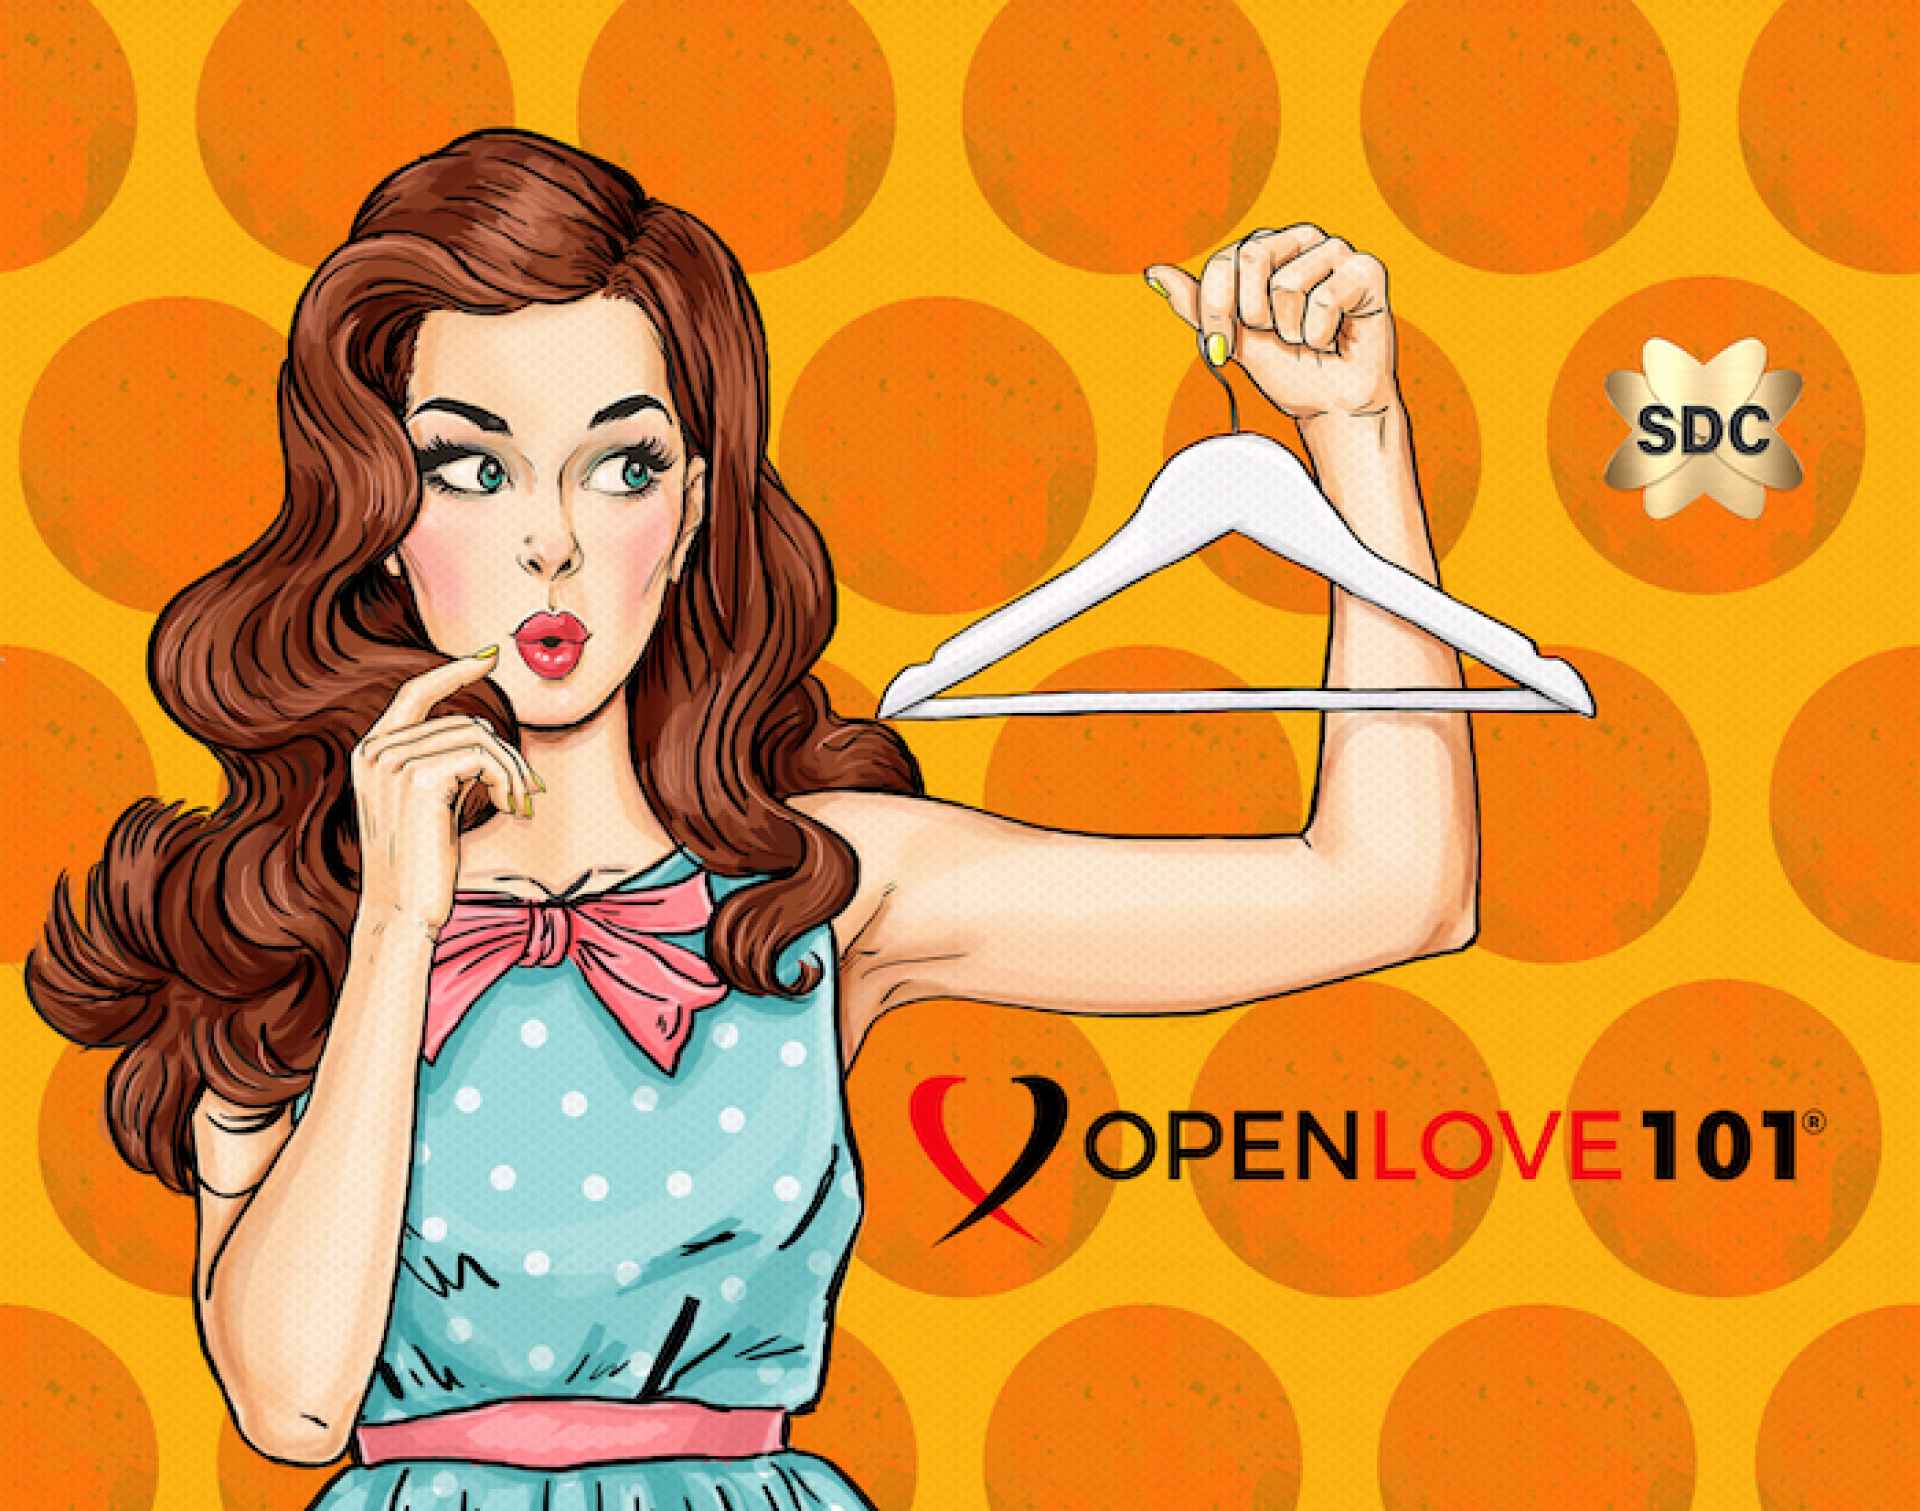 Codice di abbigliamento per Openlove 101 SDC Newbie Lifestyle Club Guide